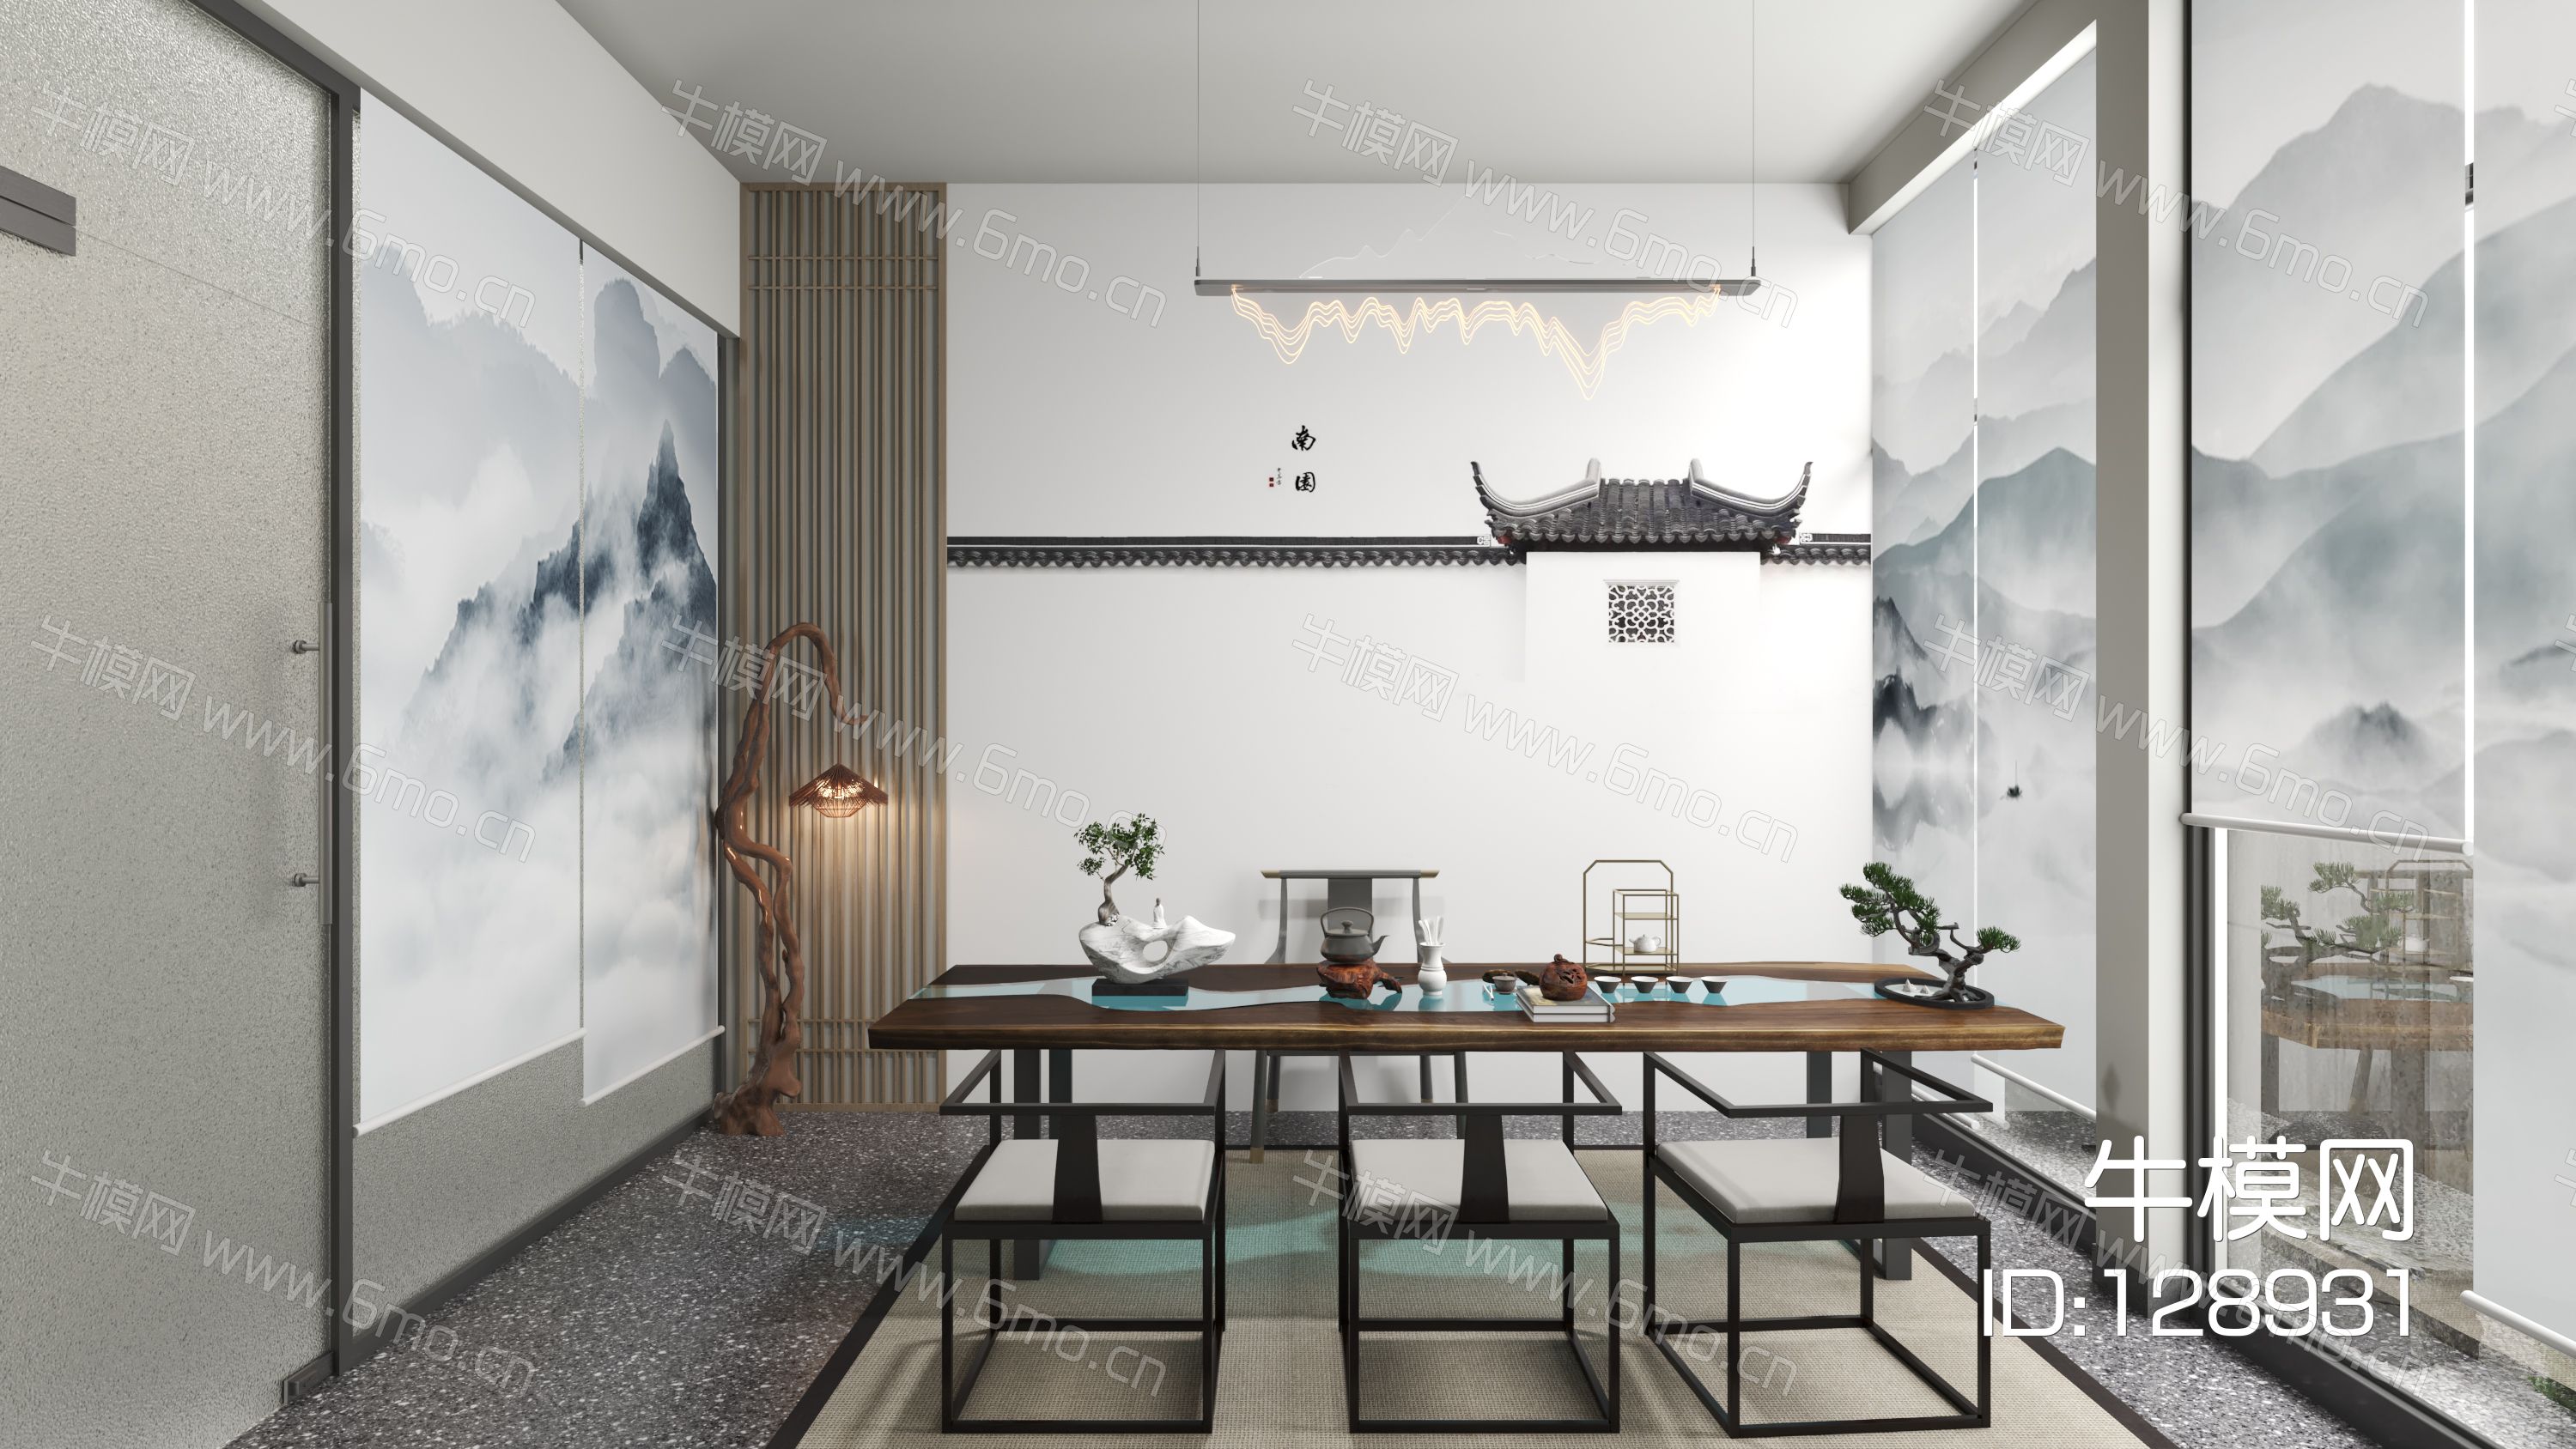  新中式茶室 山水卷帘 枯枝灯 包间 茶具 盆景 吊灯 壁画